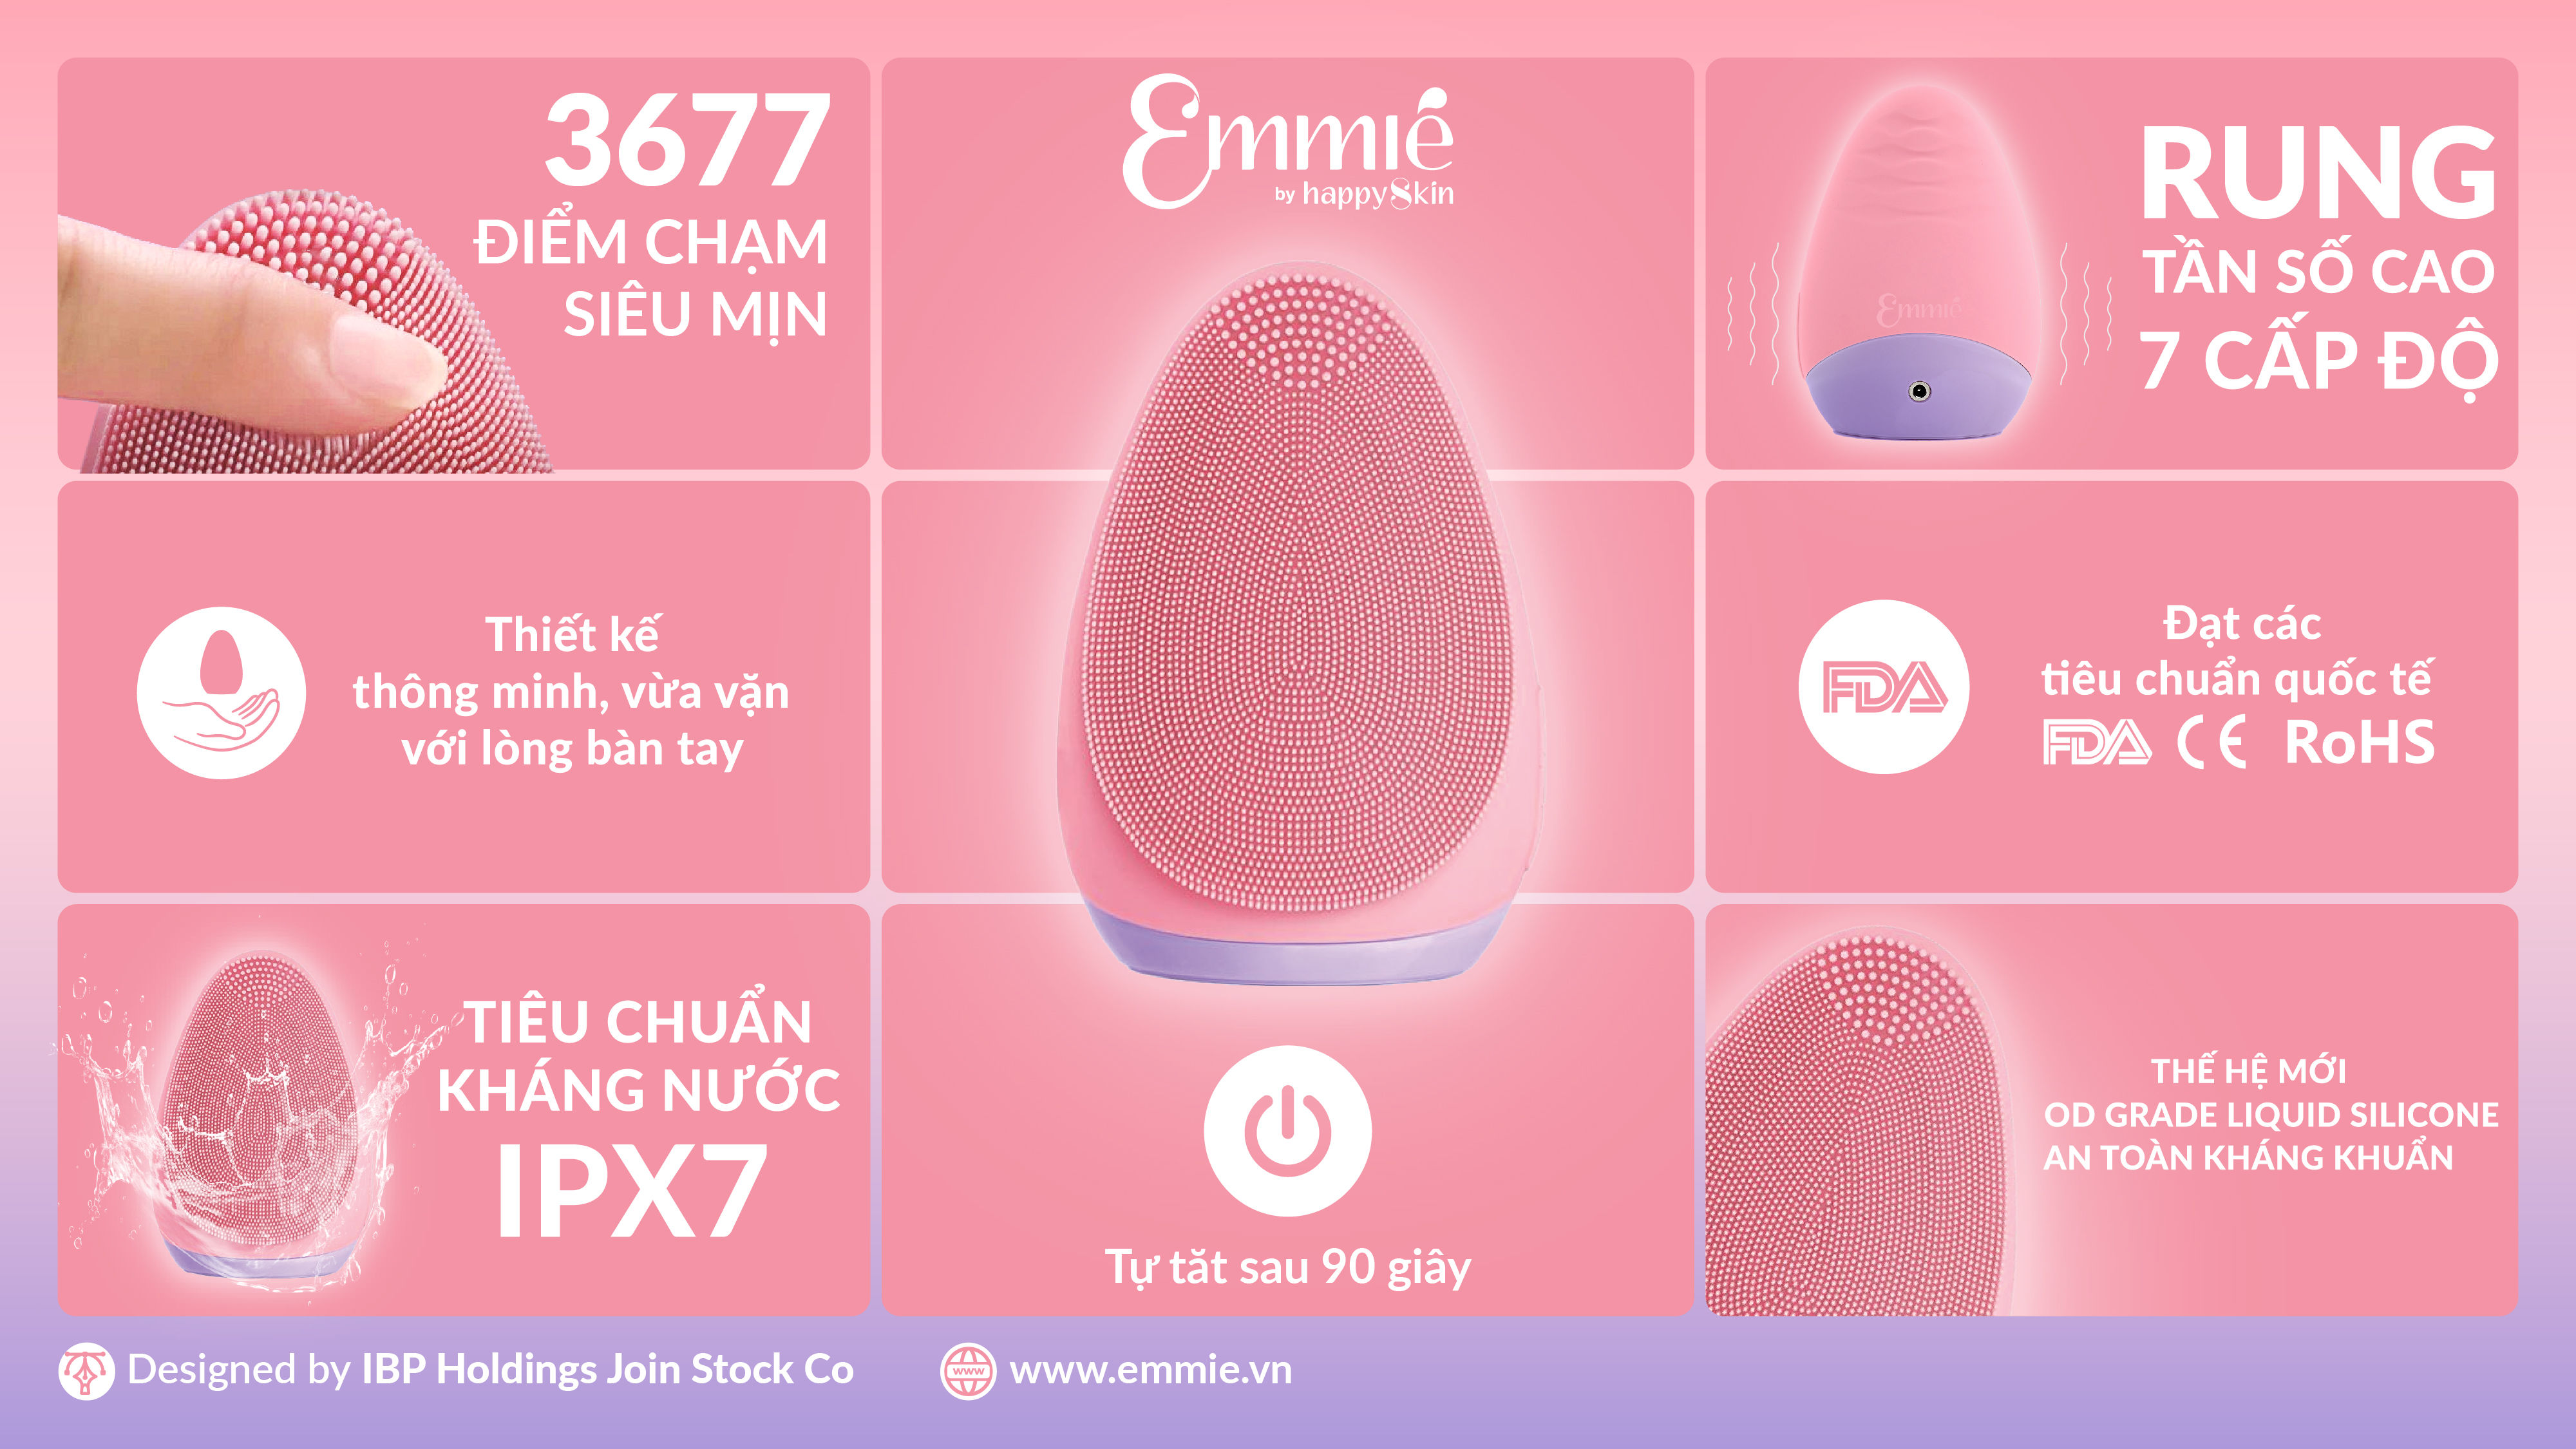 Máy Rửa Mặt Emmié Premium Facial Cleansing Brush - Đạt Chứng Nhận FDA - Baby Pink